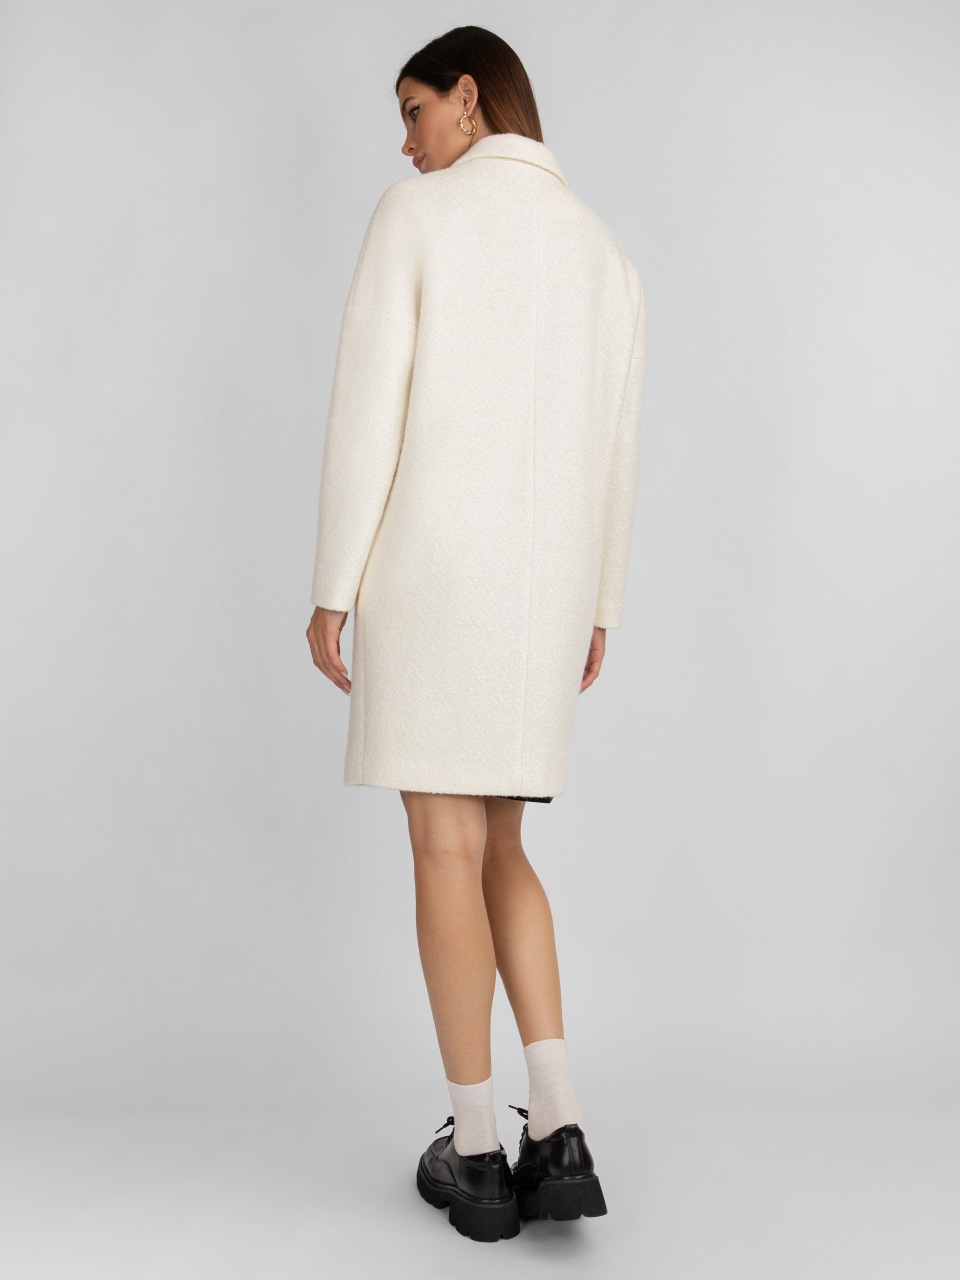 Пальто женское ElectraStyle 4-8023-225 белое 46 RU